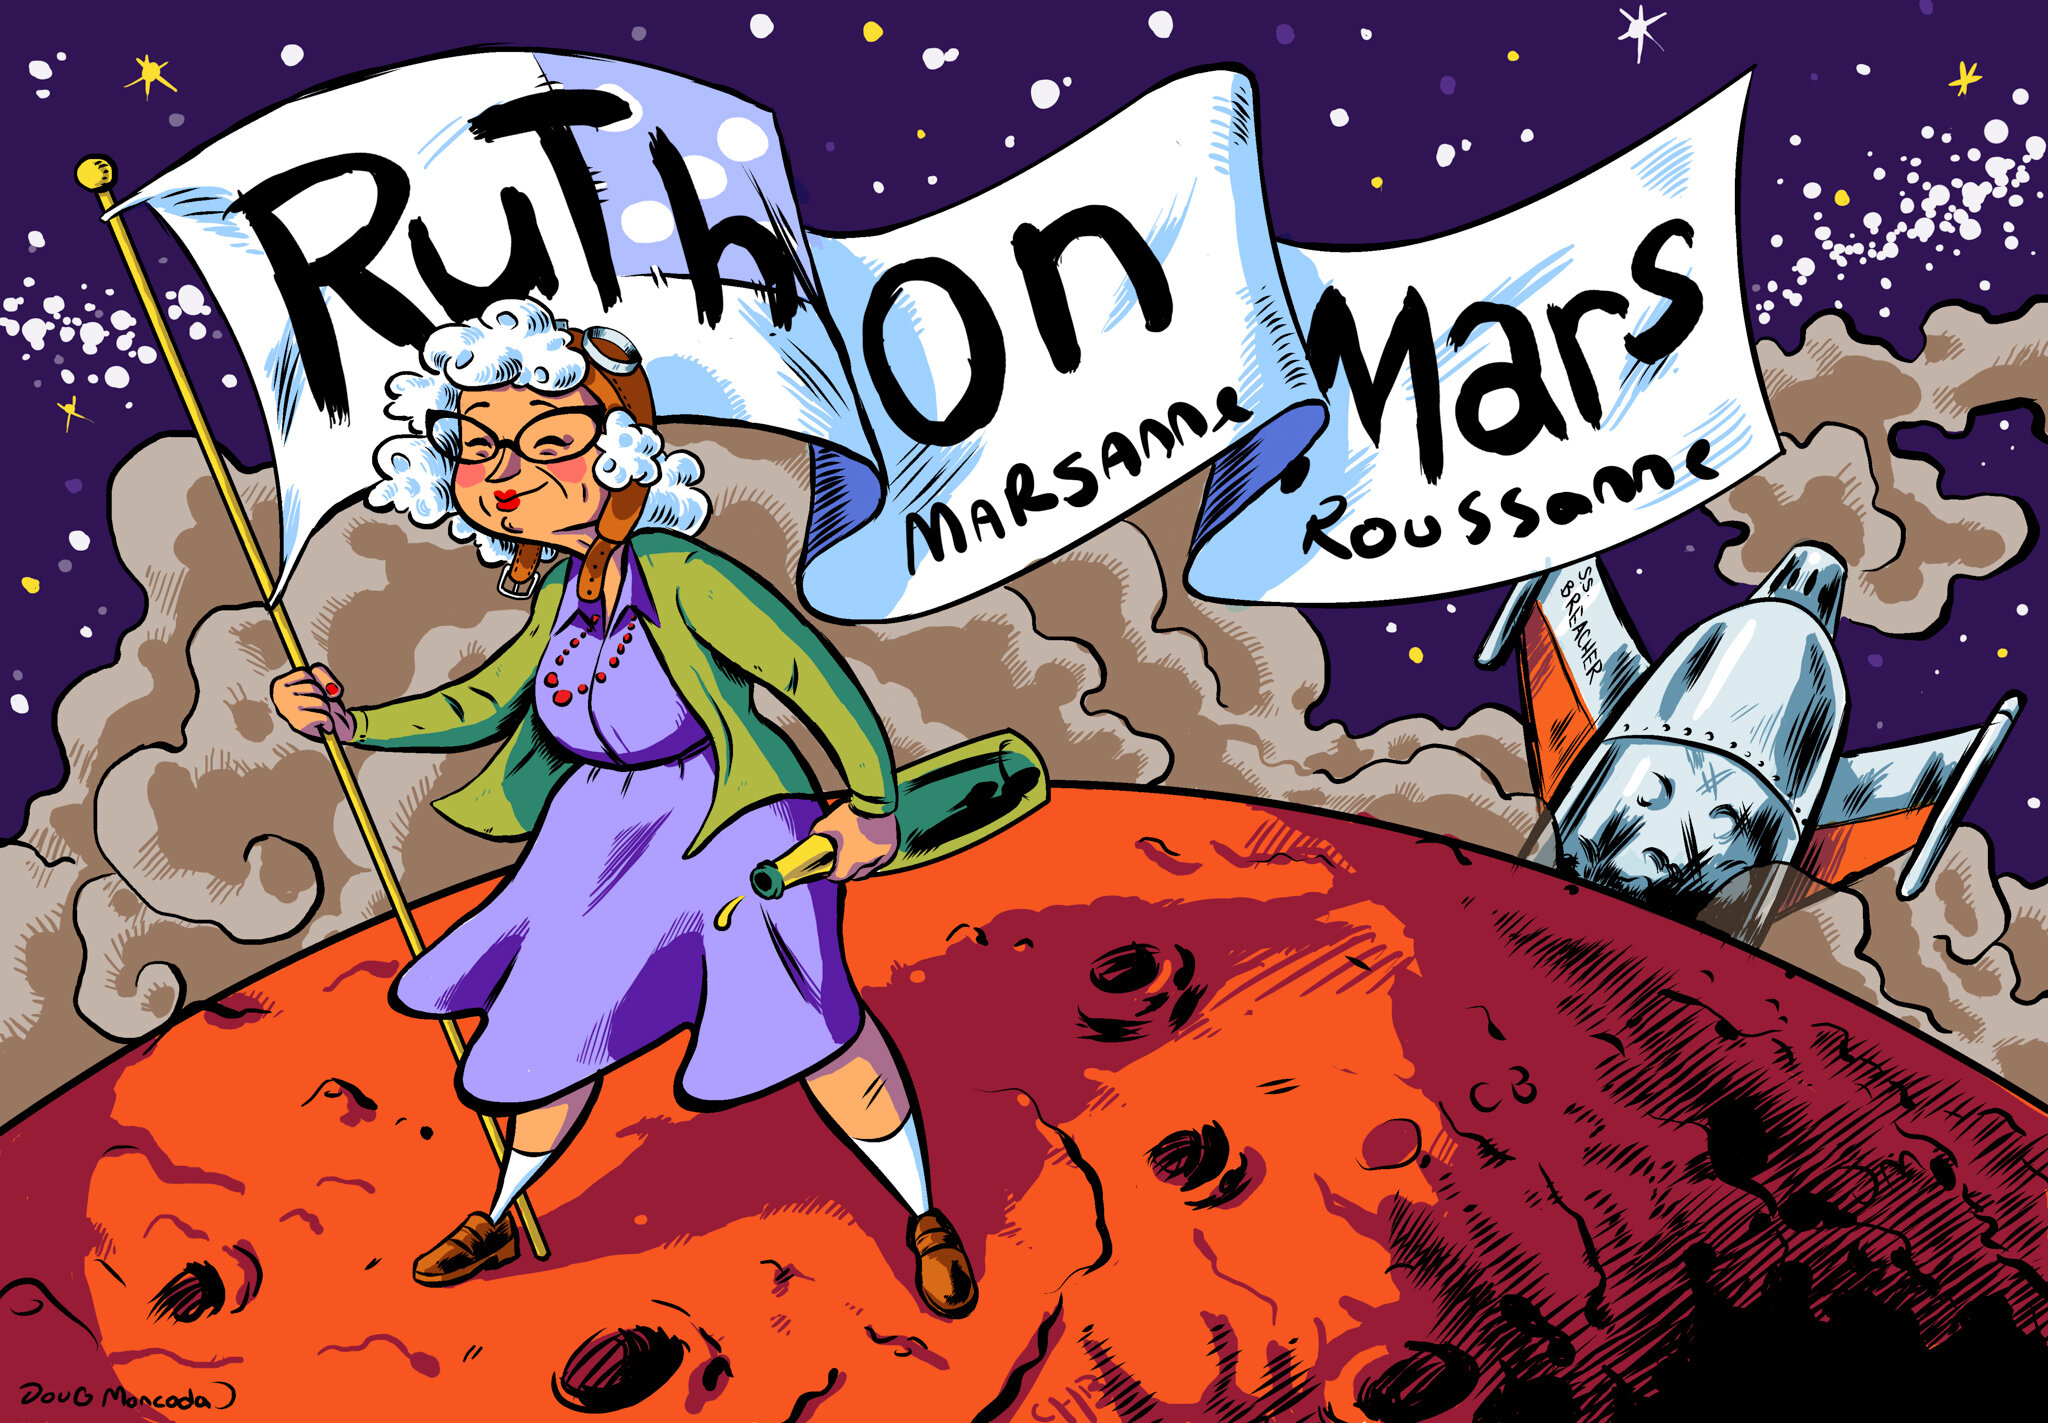 Ruth On Mars (marsanne roussanne blend) wine label.